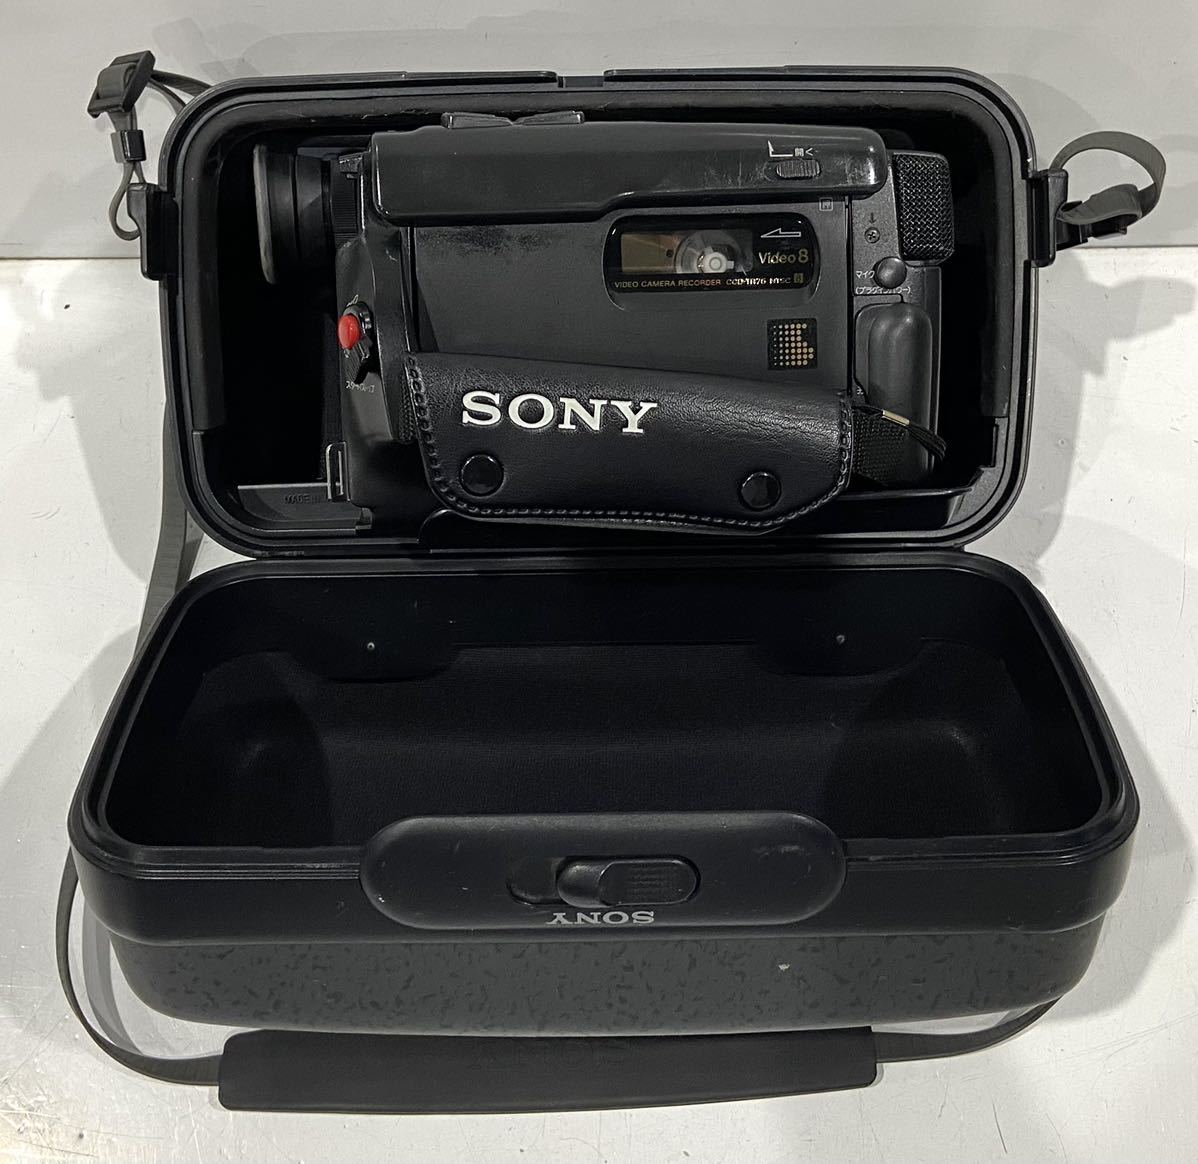 220924E* SONY Handycam CCD-TR75 VIDEO CAMERA RECORDER специальный чехол есть! способ доставки =.... рассылка takkyubin (доставка на дом) (EAZY)!